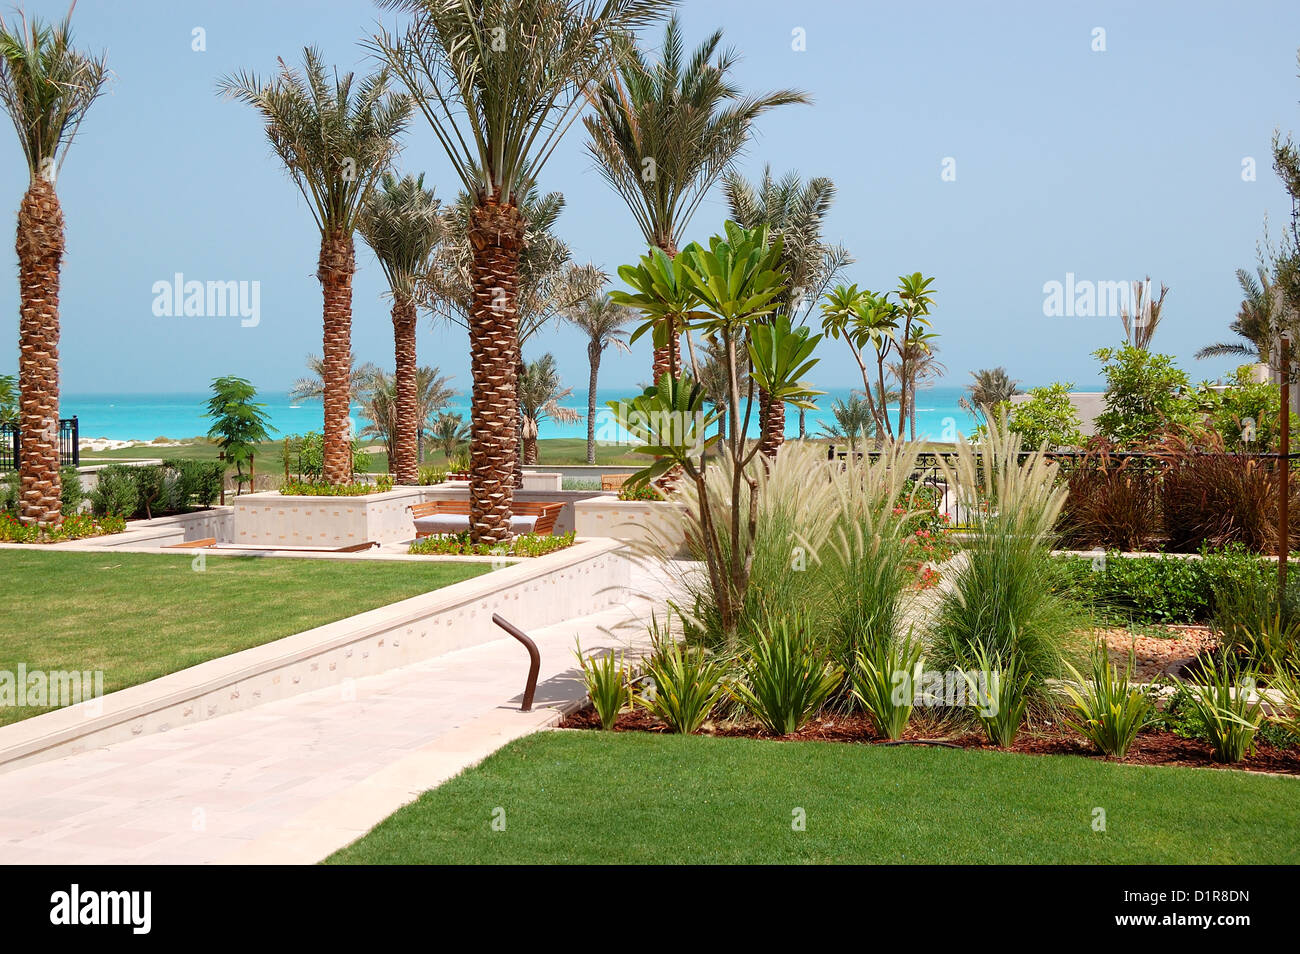 The decoration of luxury hotel, Saadiyat island, Abu Dhabi, UAE Stock Photo